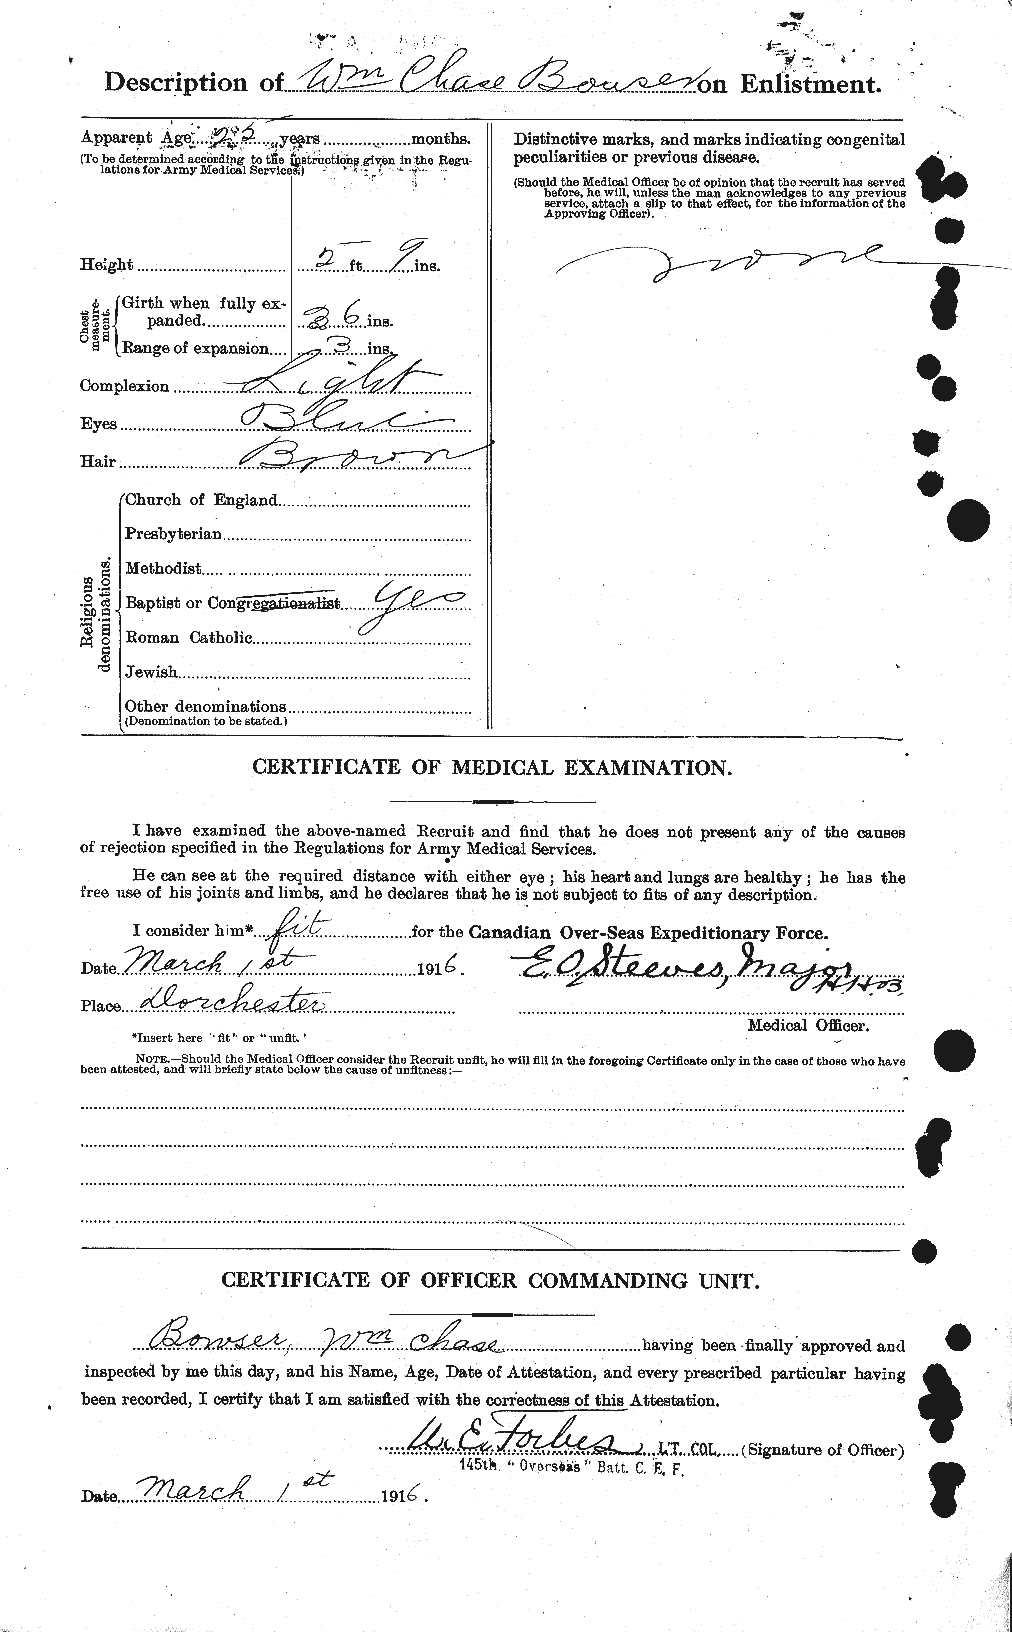 Dossiers du Personnel de la Première Guerre mondiale - CEC 256276b